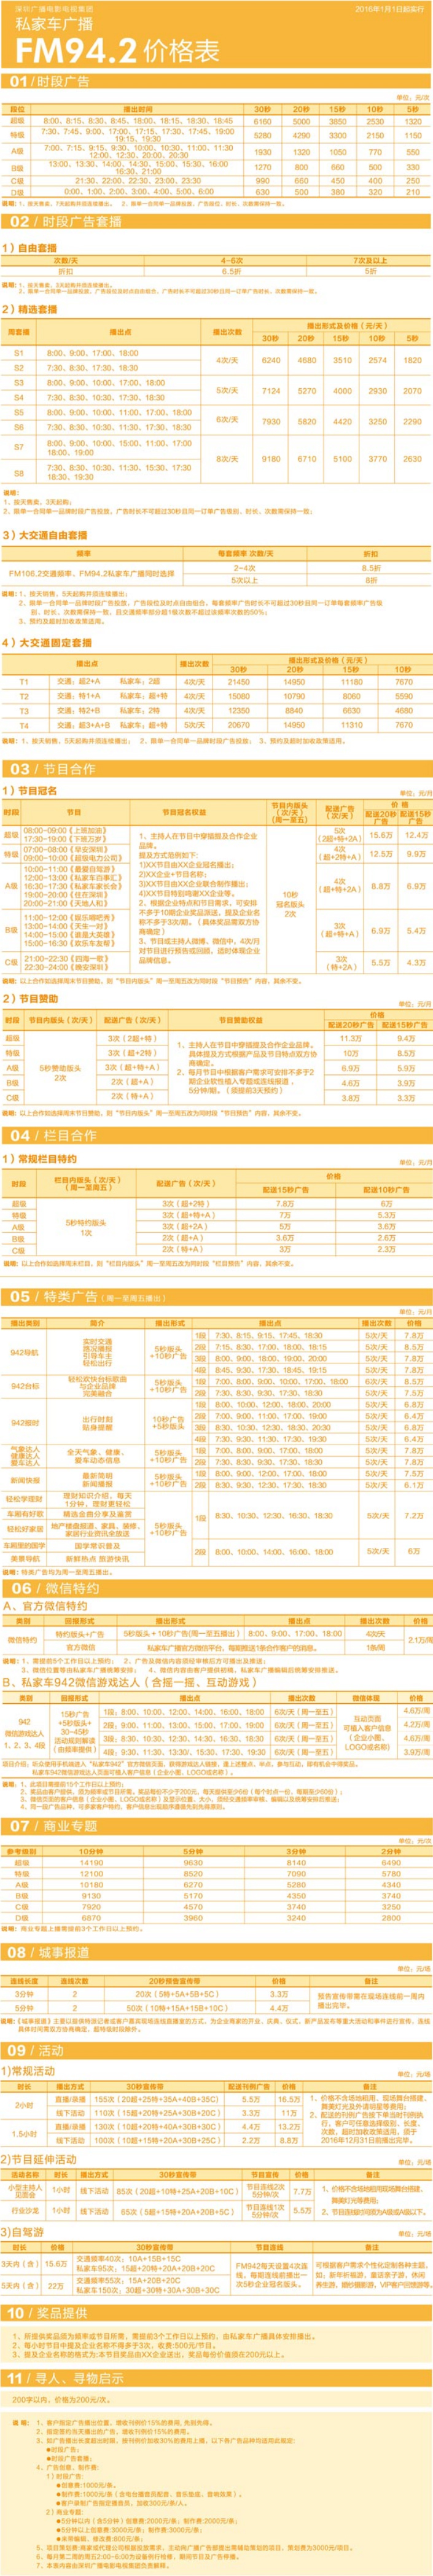 2016深圳人民广播电台生活频率 FM94.2广告报价表.jpg